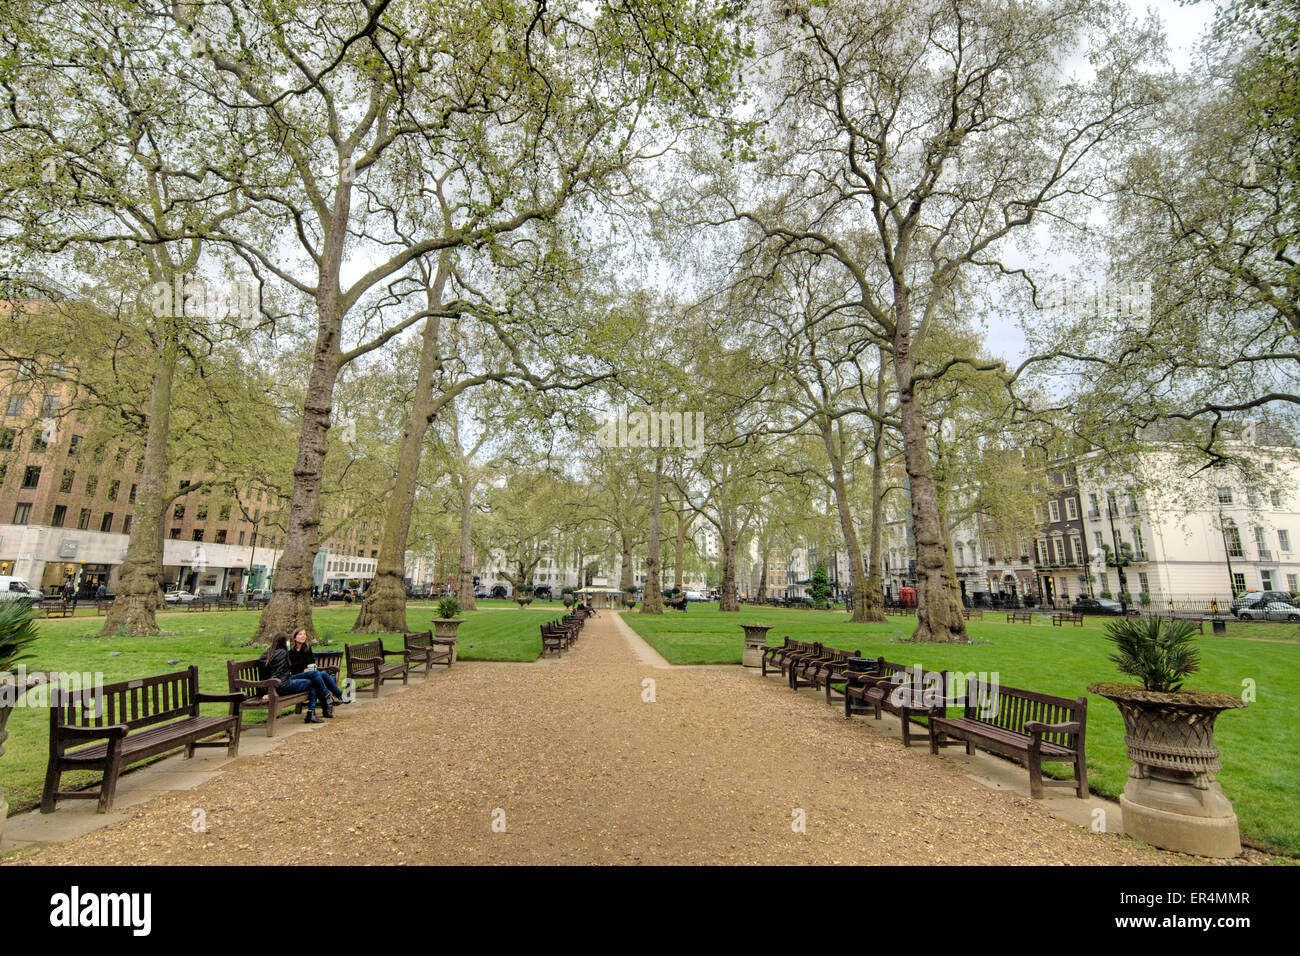 Berkley Square Garden Square Londres platanes Banque D'Images